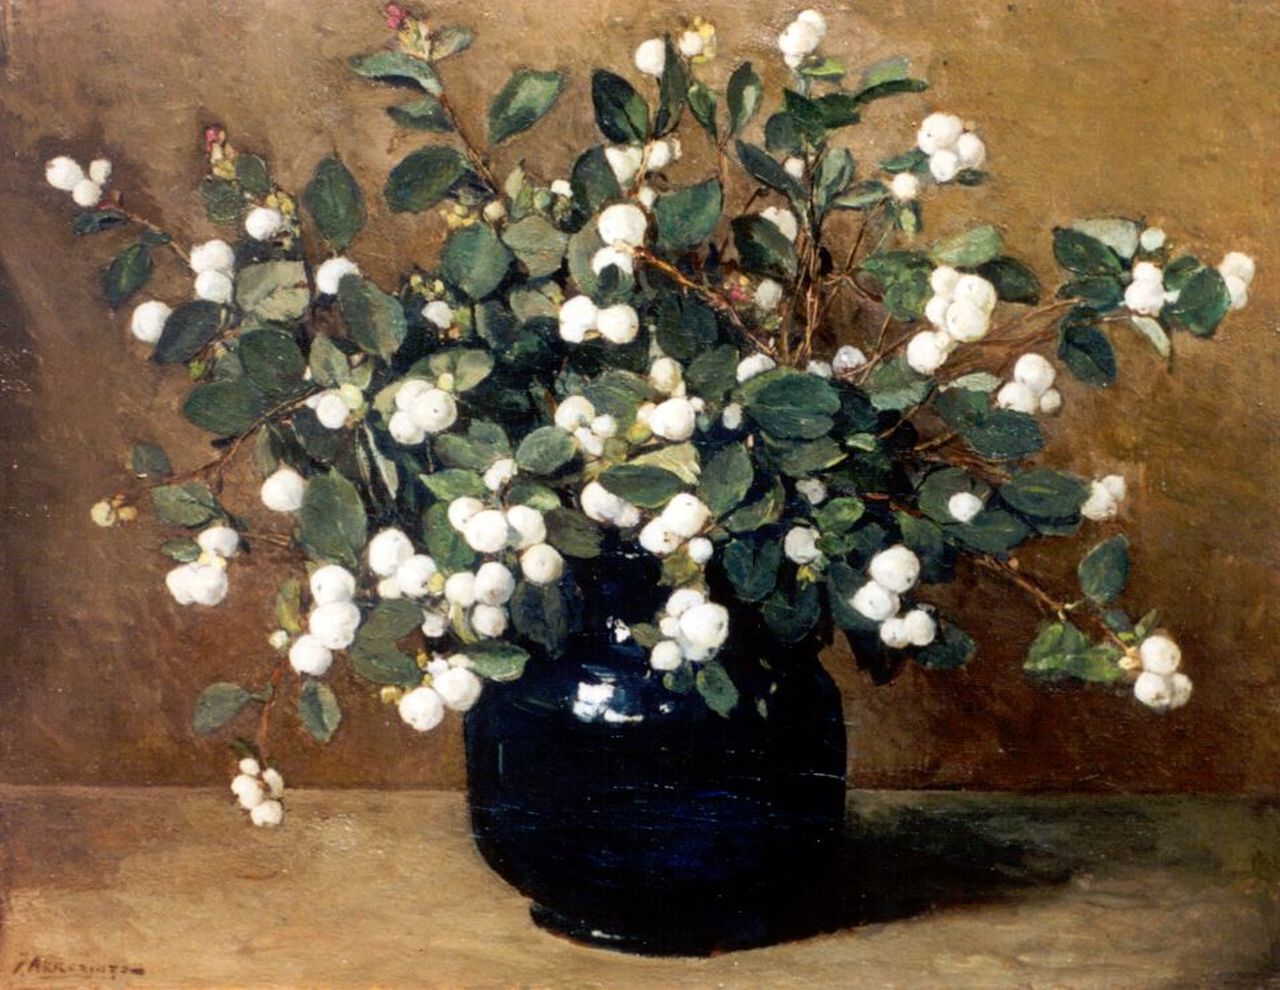 Akkeringa J.E.H.  | 'Johannes Evert' Hendrik Akkeringa, Snowberries, oil on canvas 33.5 x 41.2 cm, signed l.l. and on the reverse